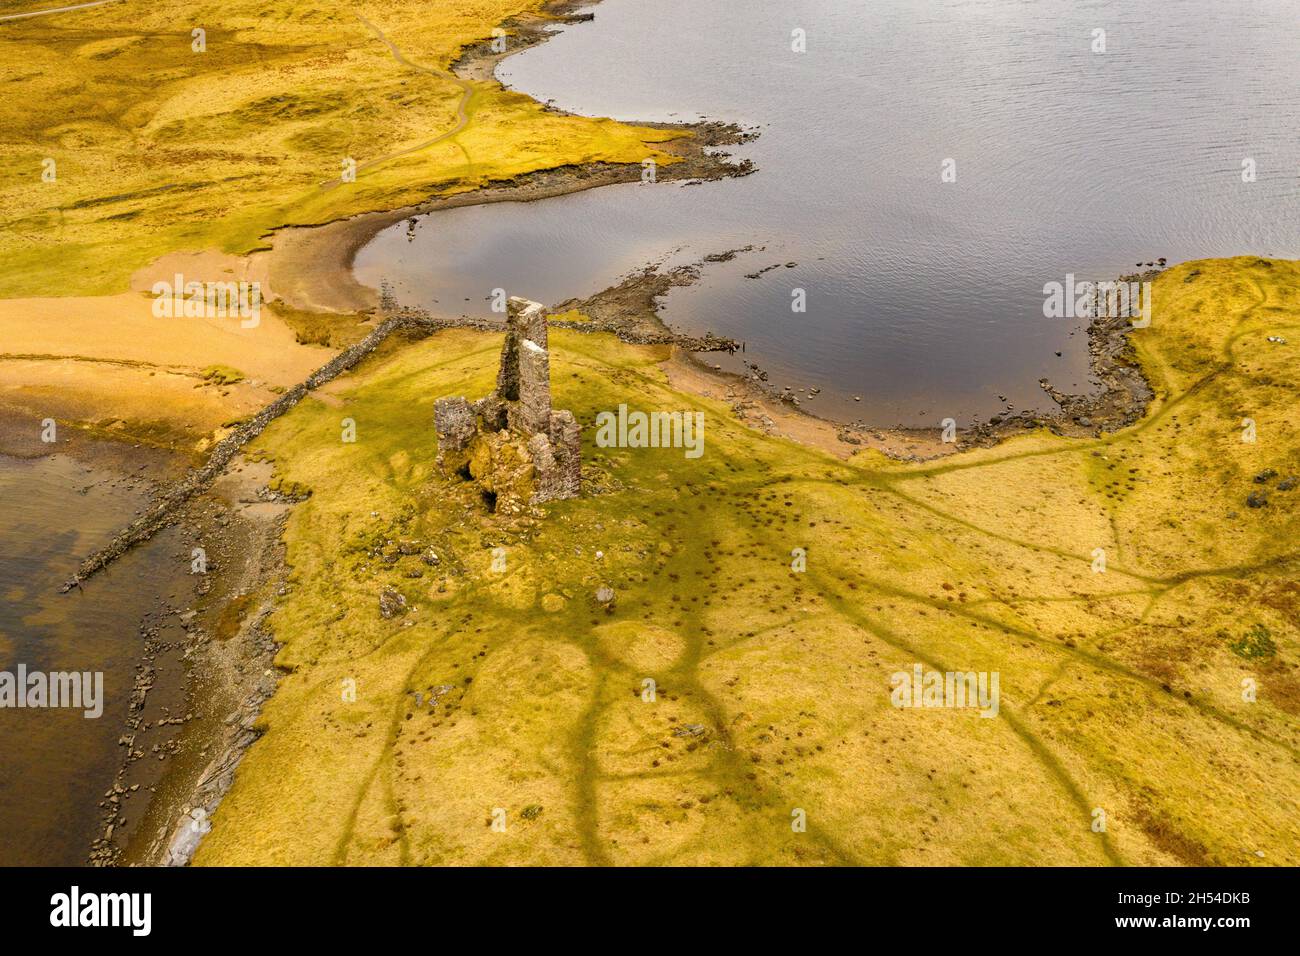 Vista aérea del Castillo de Ardvreck, construido por el Clan Macleod en el siglo XVI en un promontorio de tierra que se adentra en el lago Assynt. Foto de stock